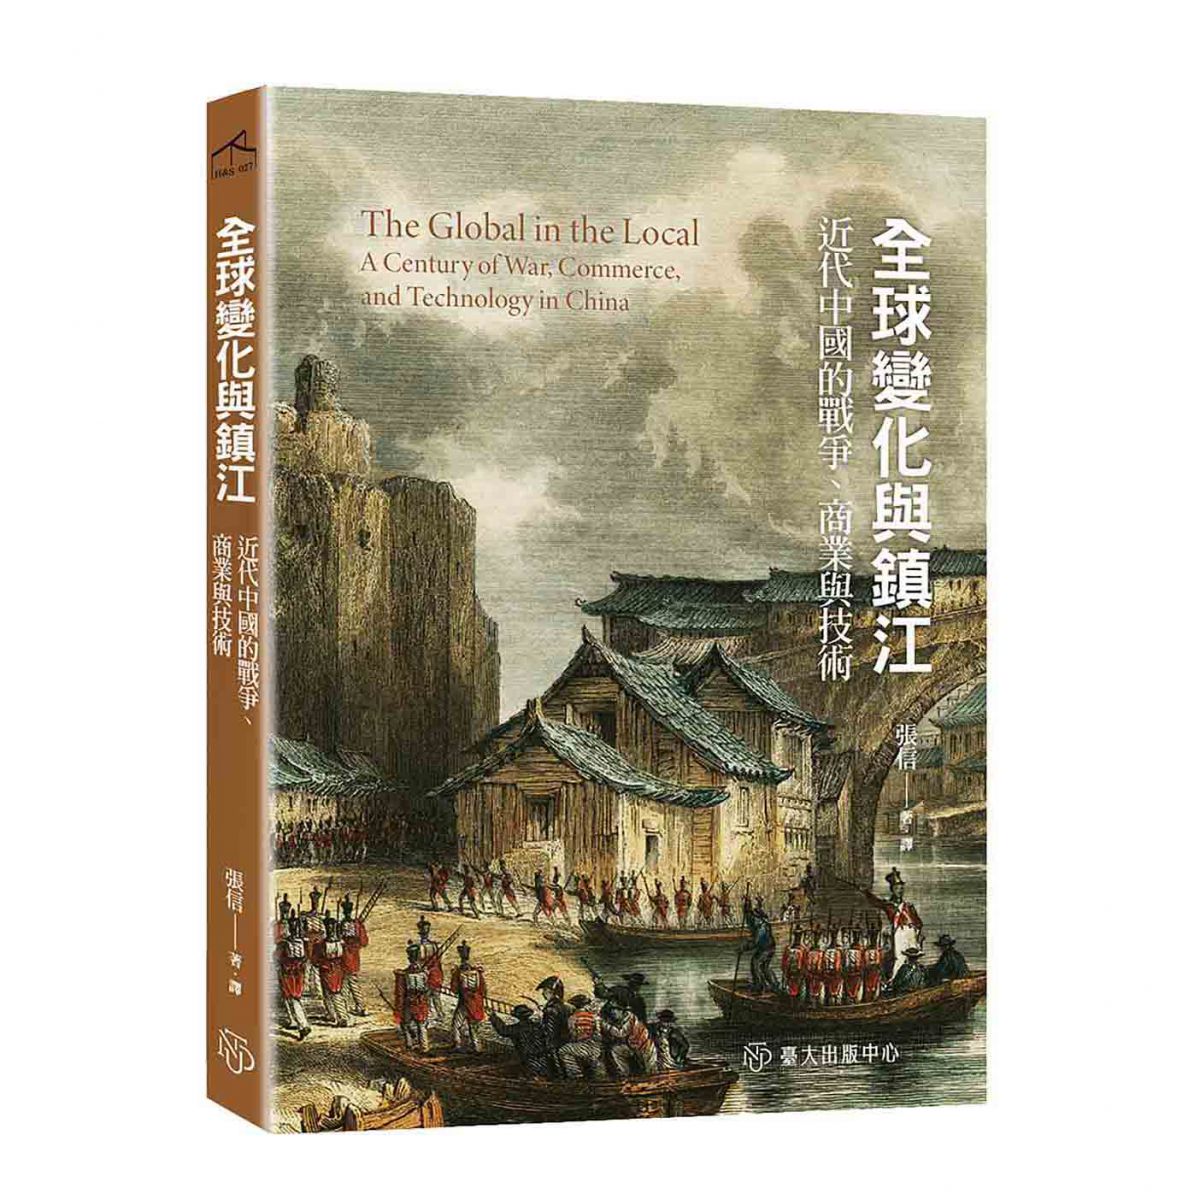 《全球變化與鎮江》從常民的視角呈現鴉片戰爭的衝擊、中國貿易體系的轉變，與蒸氣航行對人們日常生活的改變